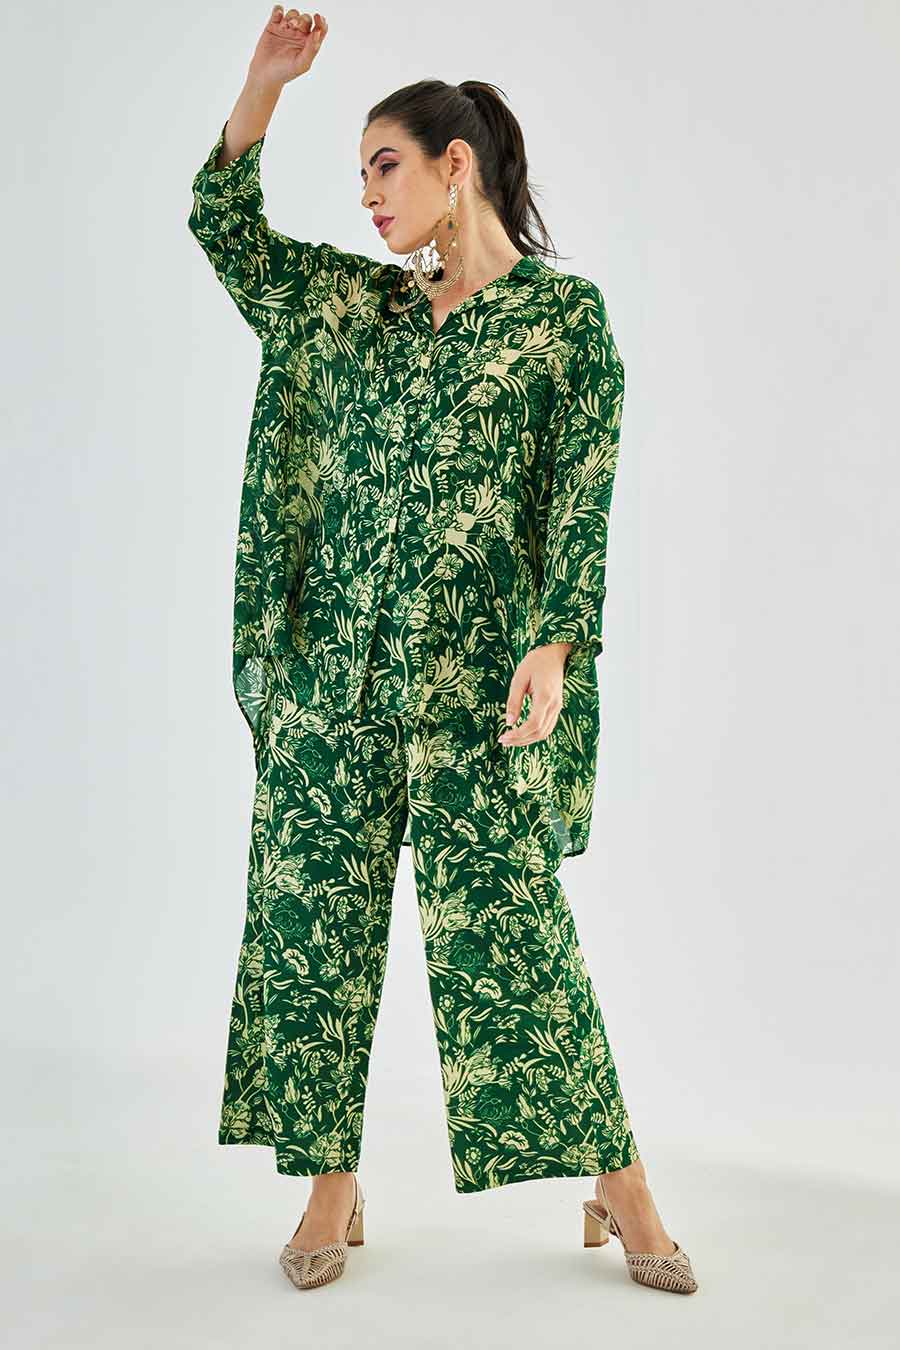 Small Green Floral Printed MJ Shirt & Pant Set